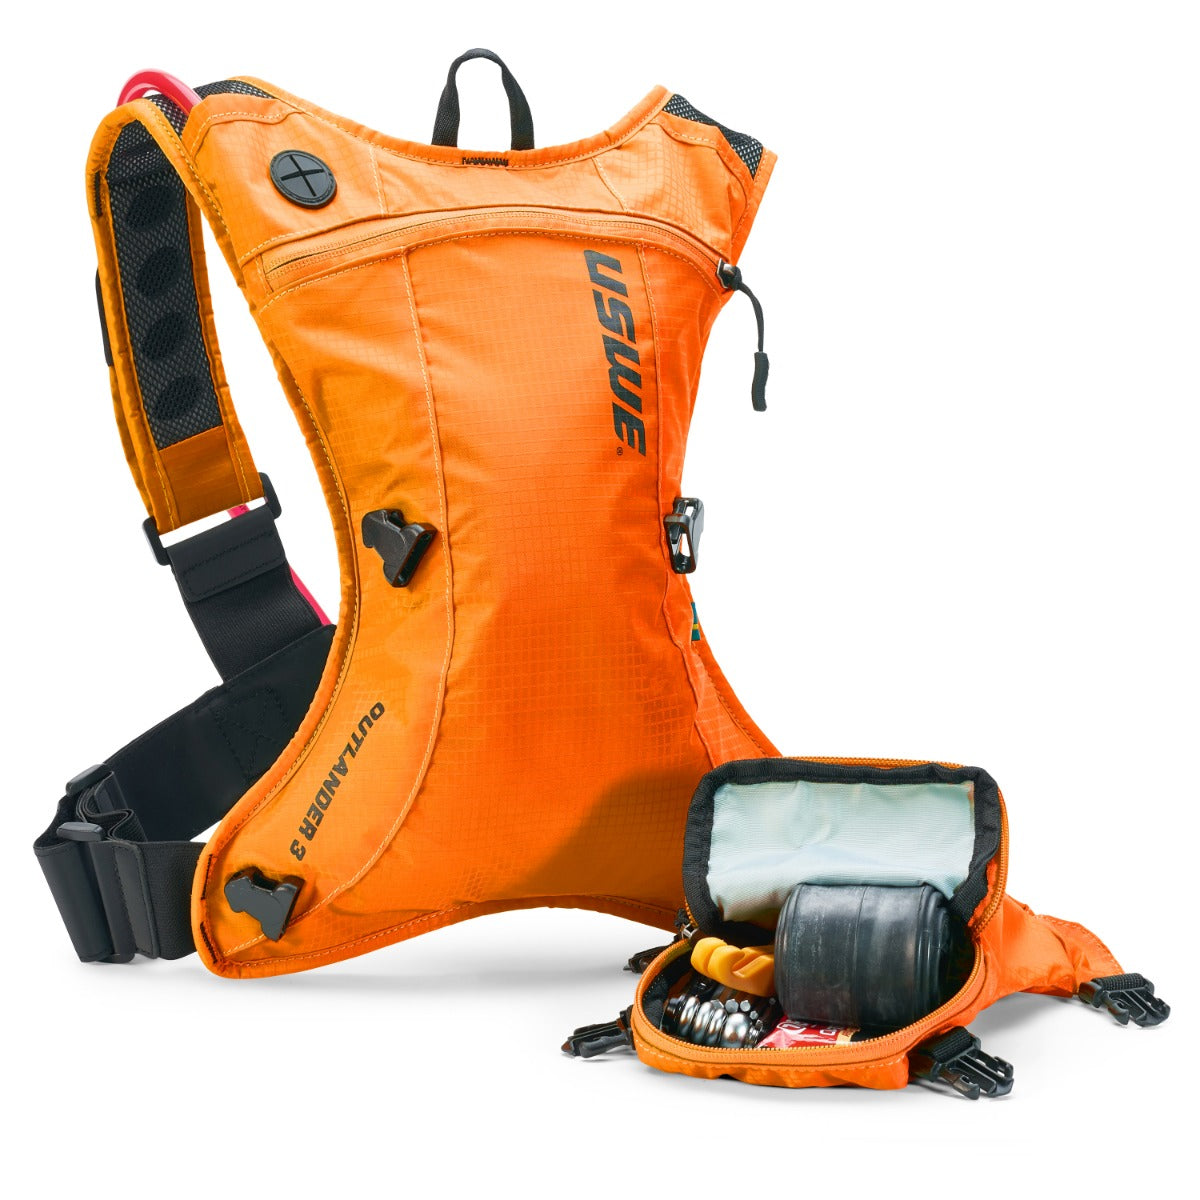 USWE Outlander 3 Hydration Backpack Orange – With 1.5 Litre Bladder